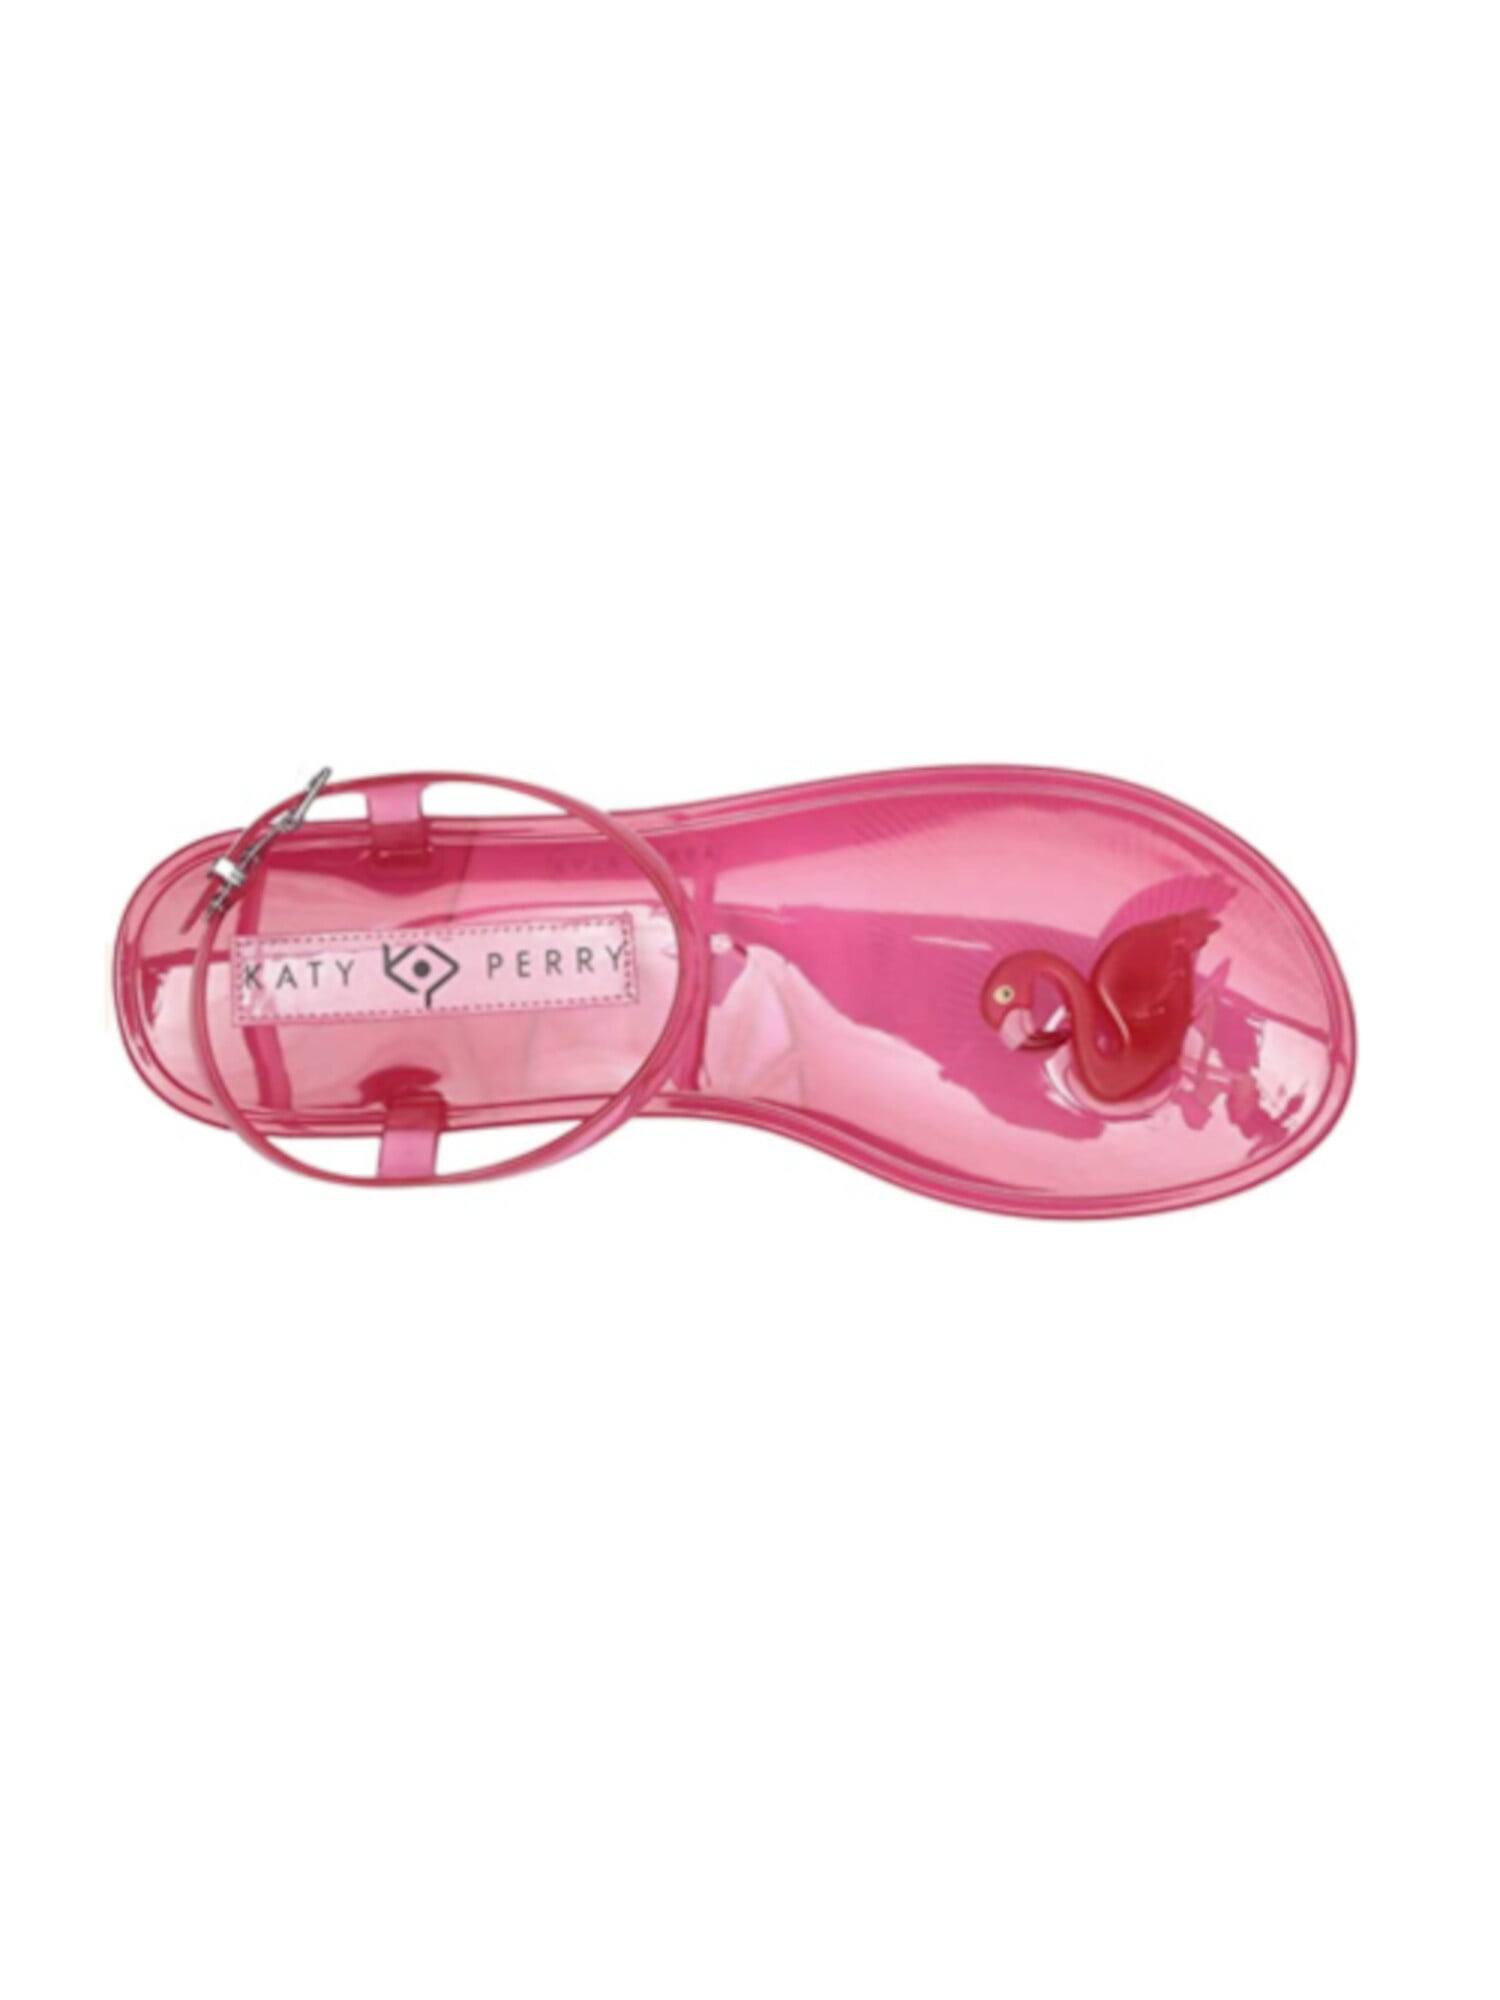 Katy Perry Women's The Geli Sandal, Vintage Pink Butterfly, 8, Vintage Pink  Butterfly, 8 : Buy Online at Best Price in KSA - Souq is now Amazon.sa:  Fashion